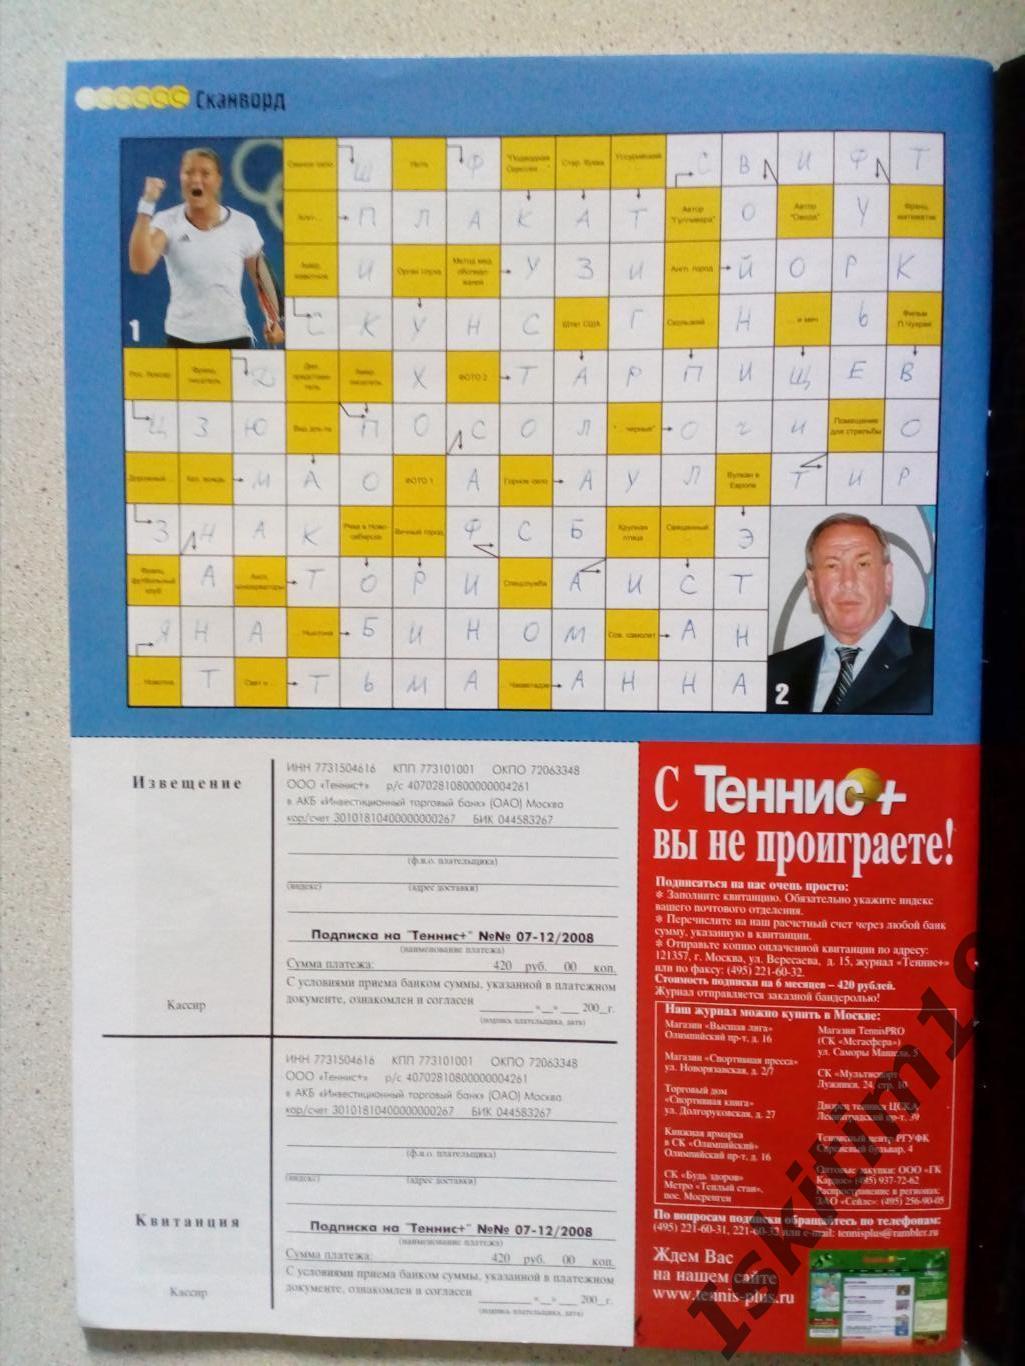 Журнал Теннис+ октябрь 2008 № 10 (193) + каталог Babolat 2